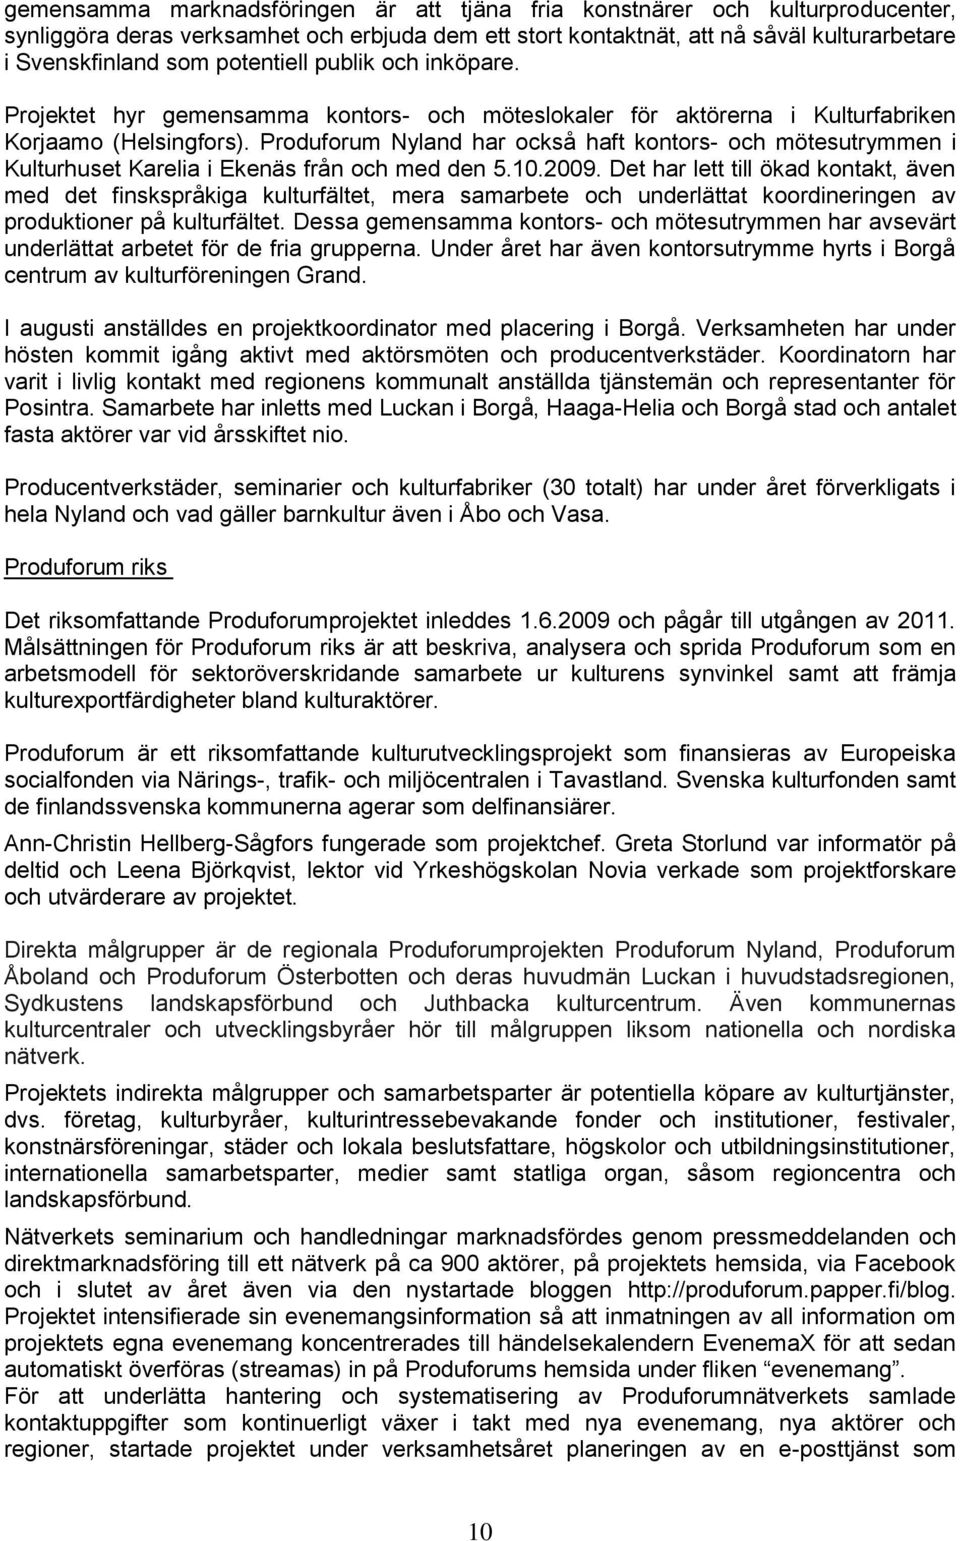 Produforum Nyland har också haft kontors- och mötesutrymmen i Kulturhuset Karelia i Ekenäs från och med den 5.10.2009.